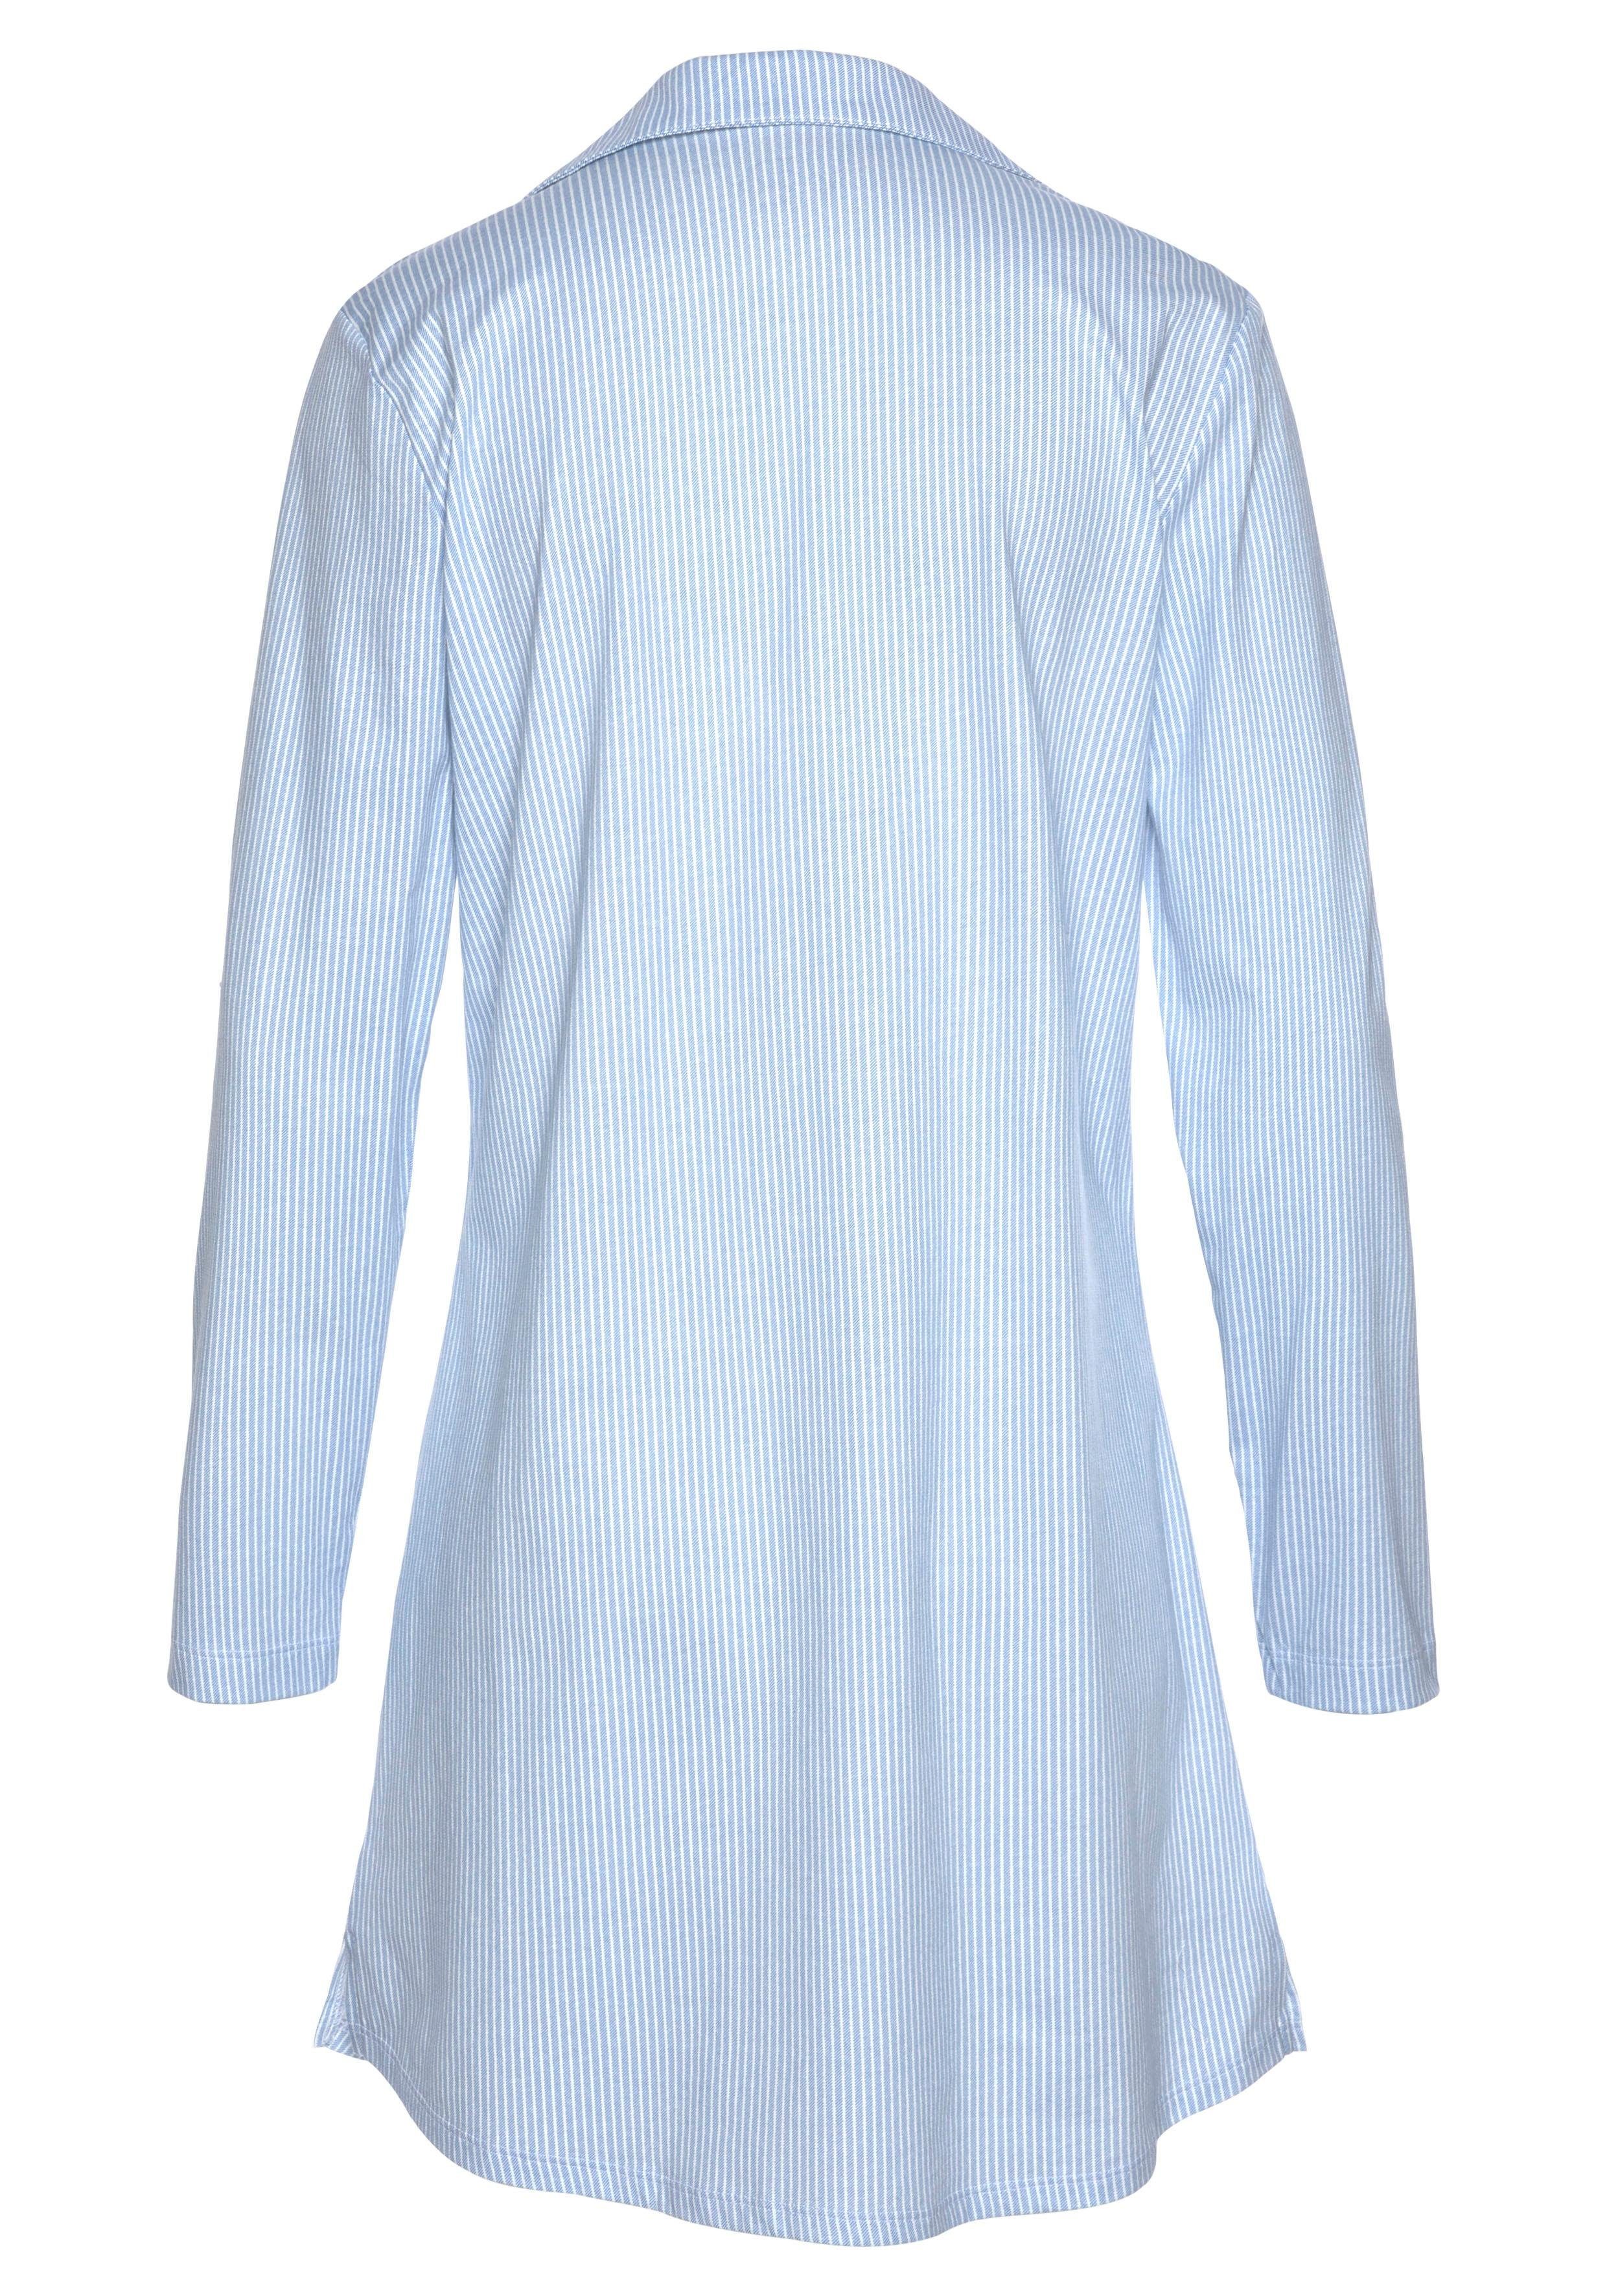 Nachthemd blau-weiß Muster Dreams mit feinem Vivance